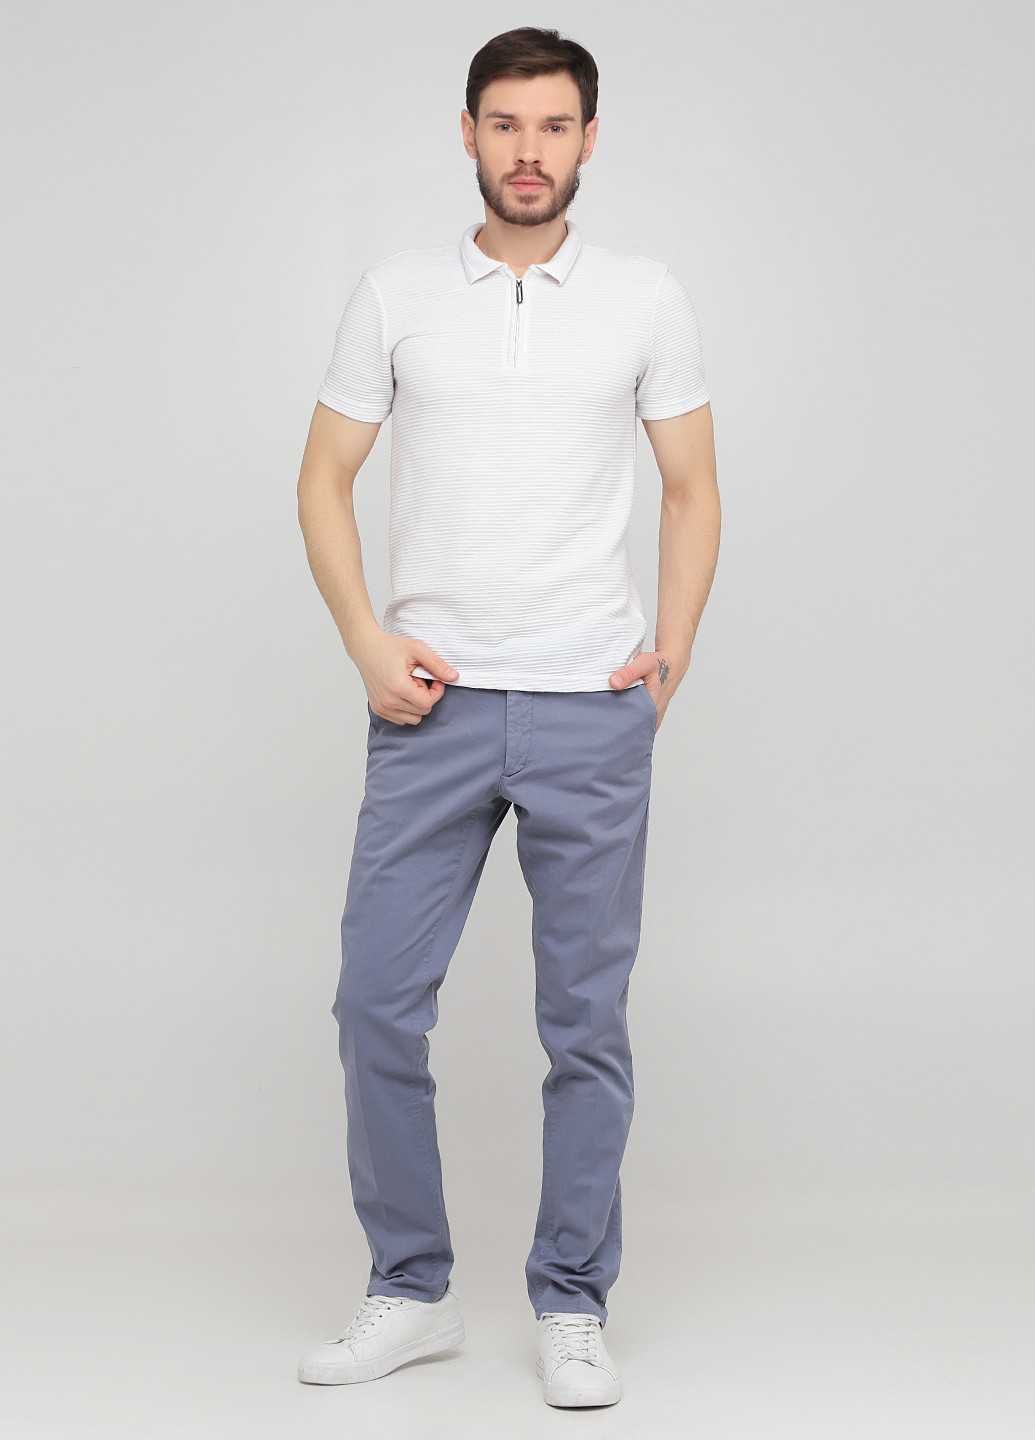 Голубые кэжуал демисезонные чиносы брюки Massimo Dutti